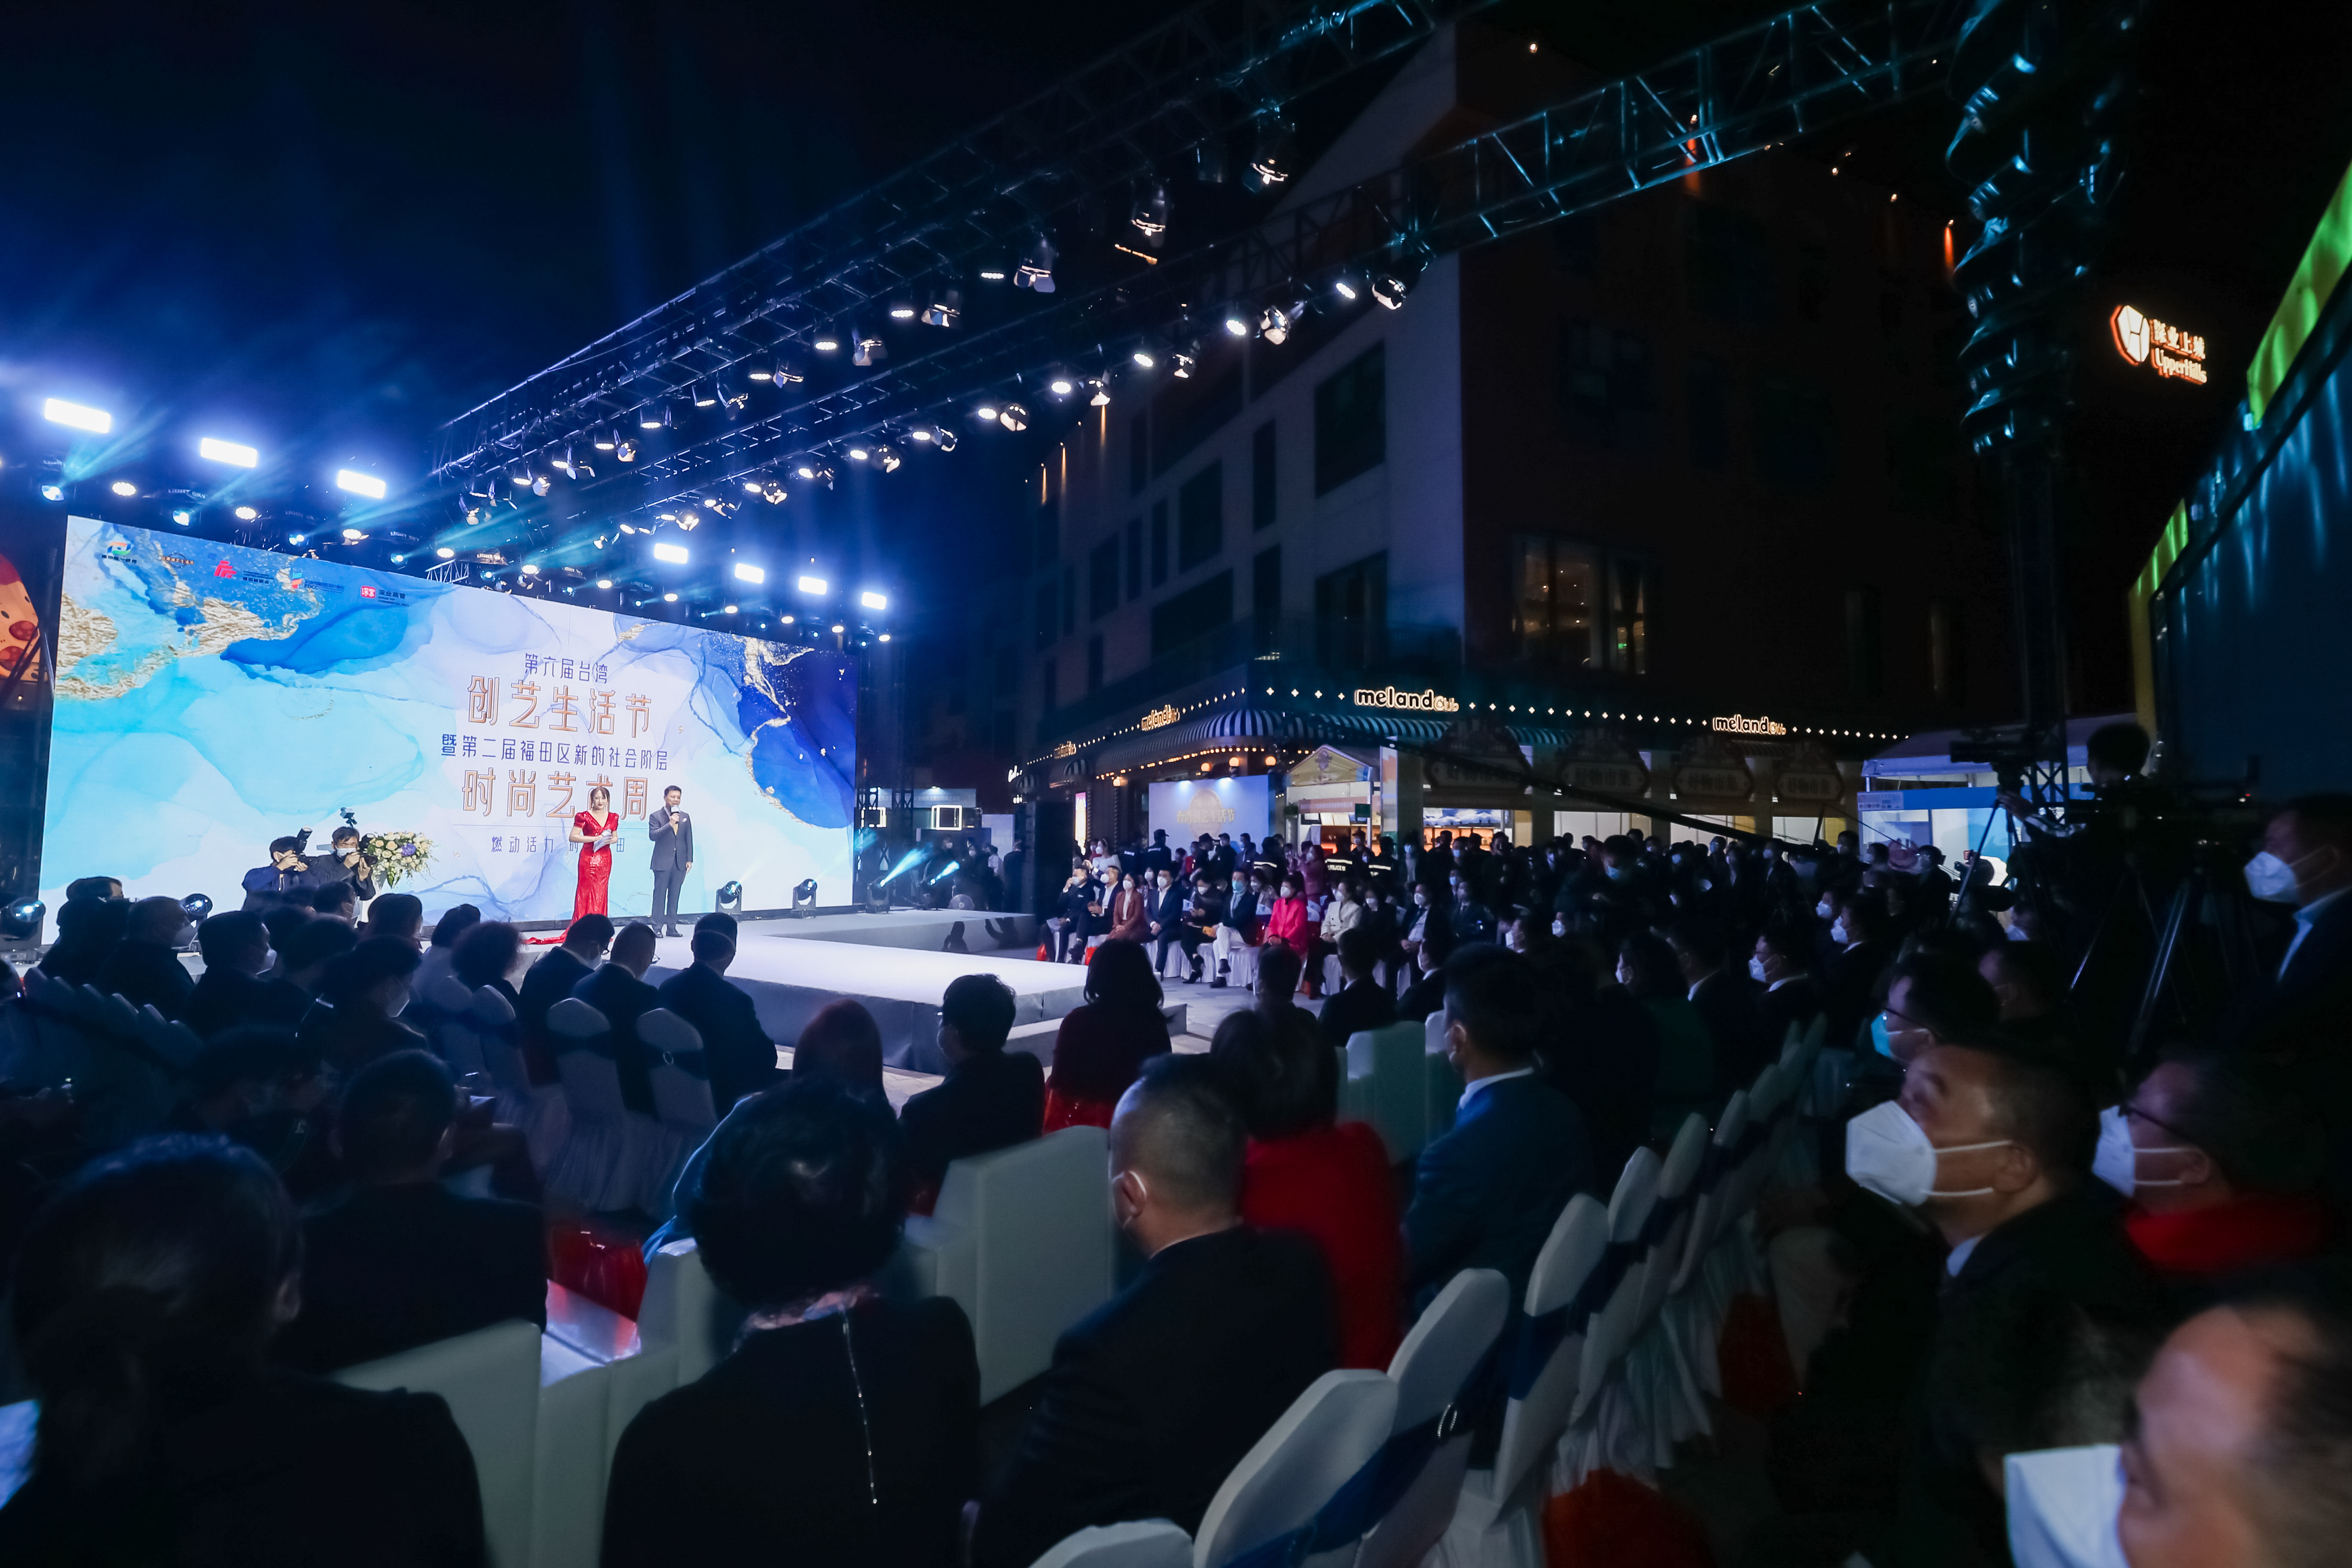 第六届台湾创艺生活节暨第二届福田区新的社会阶层时尚艺术周开幕